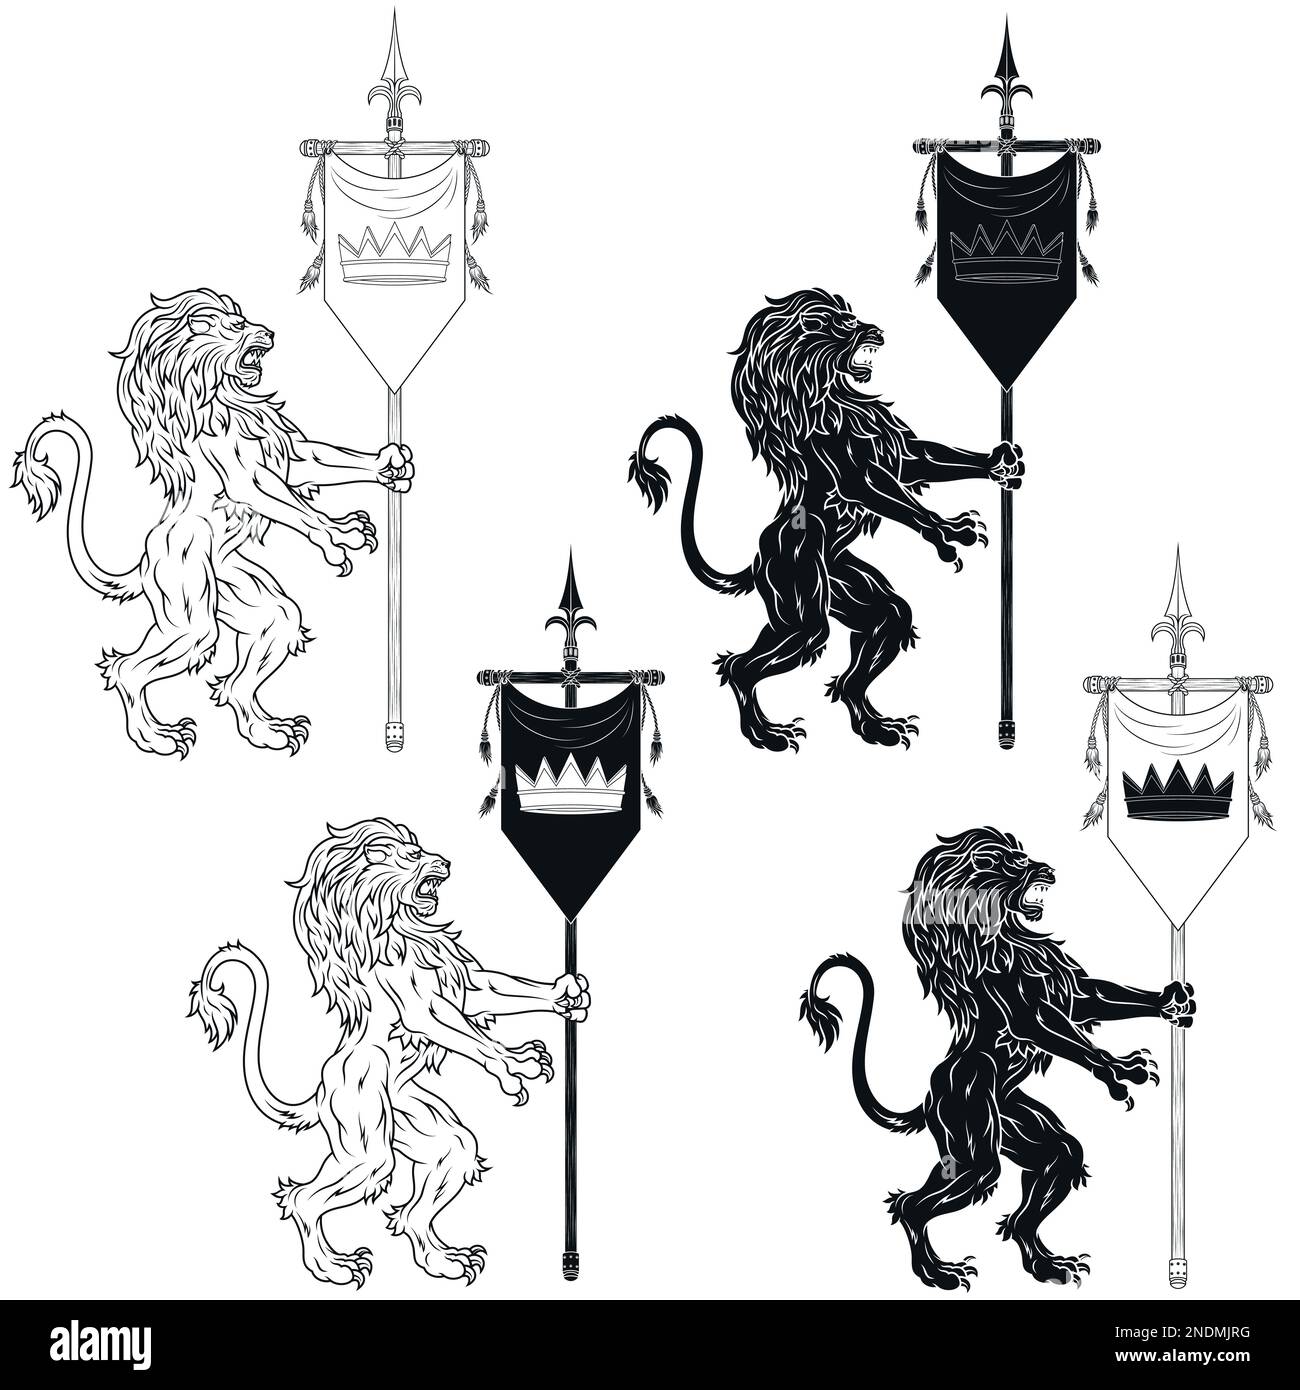 Vektordesign eines wilden Löwen mit mittelalterlichem Wimpel, ein heraldisches Symbol des europäischen Mittelalters Stock Vektor